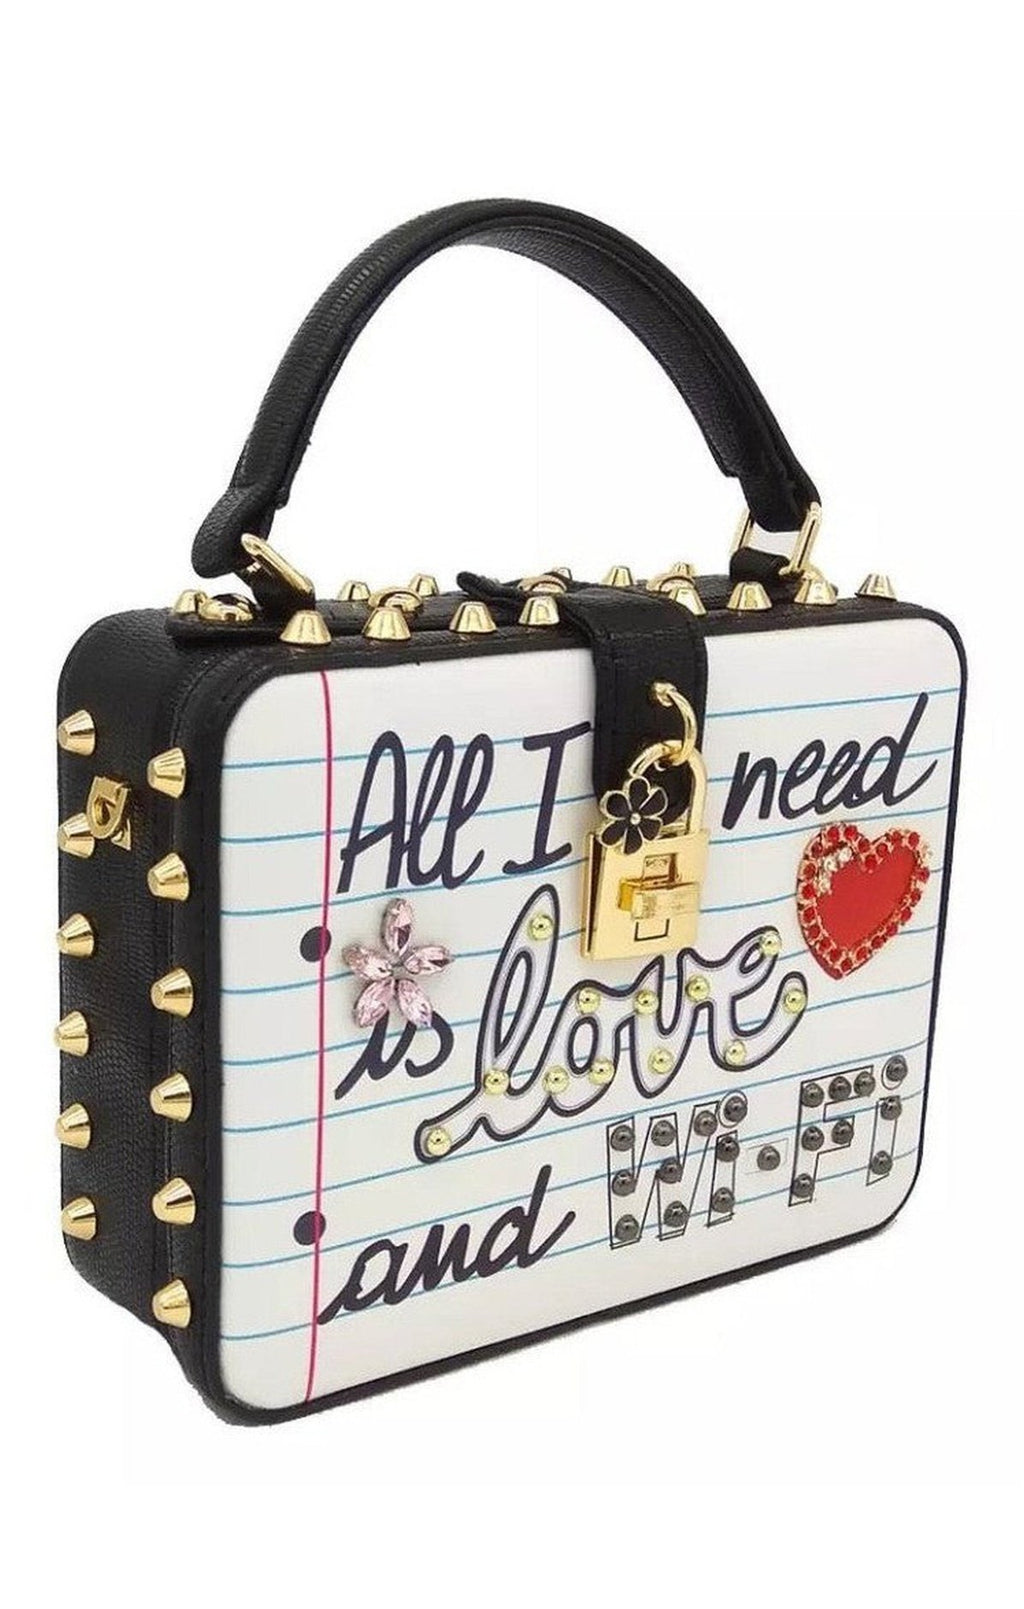 Love bag purse